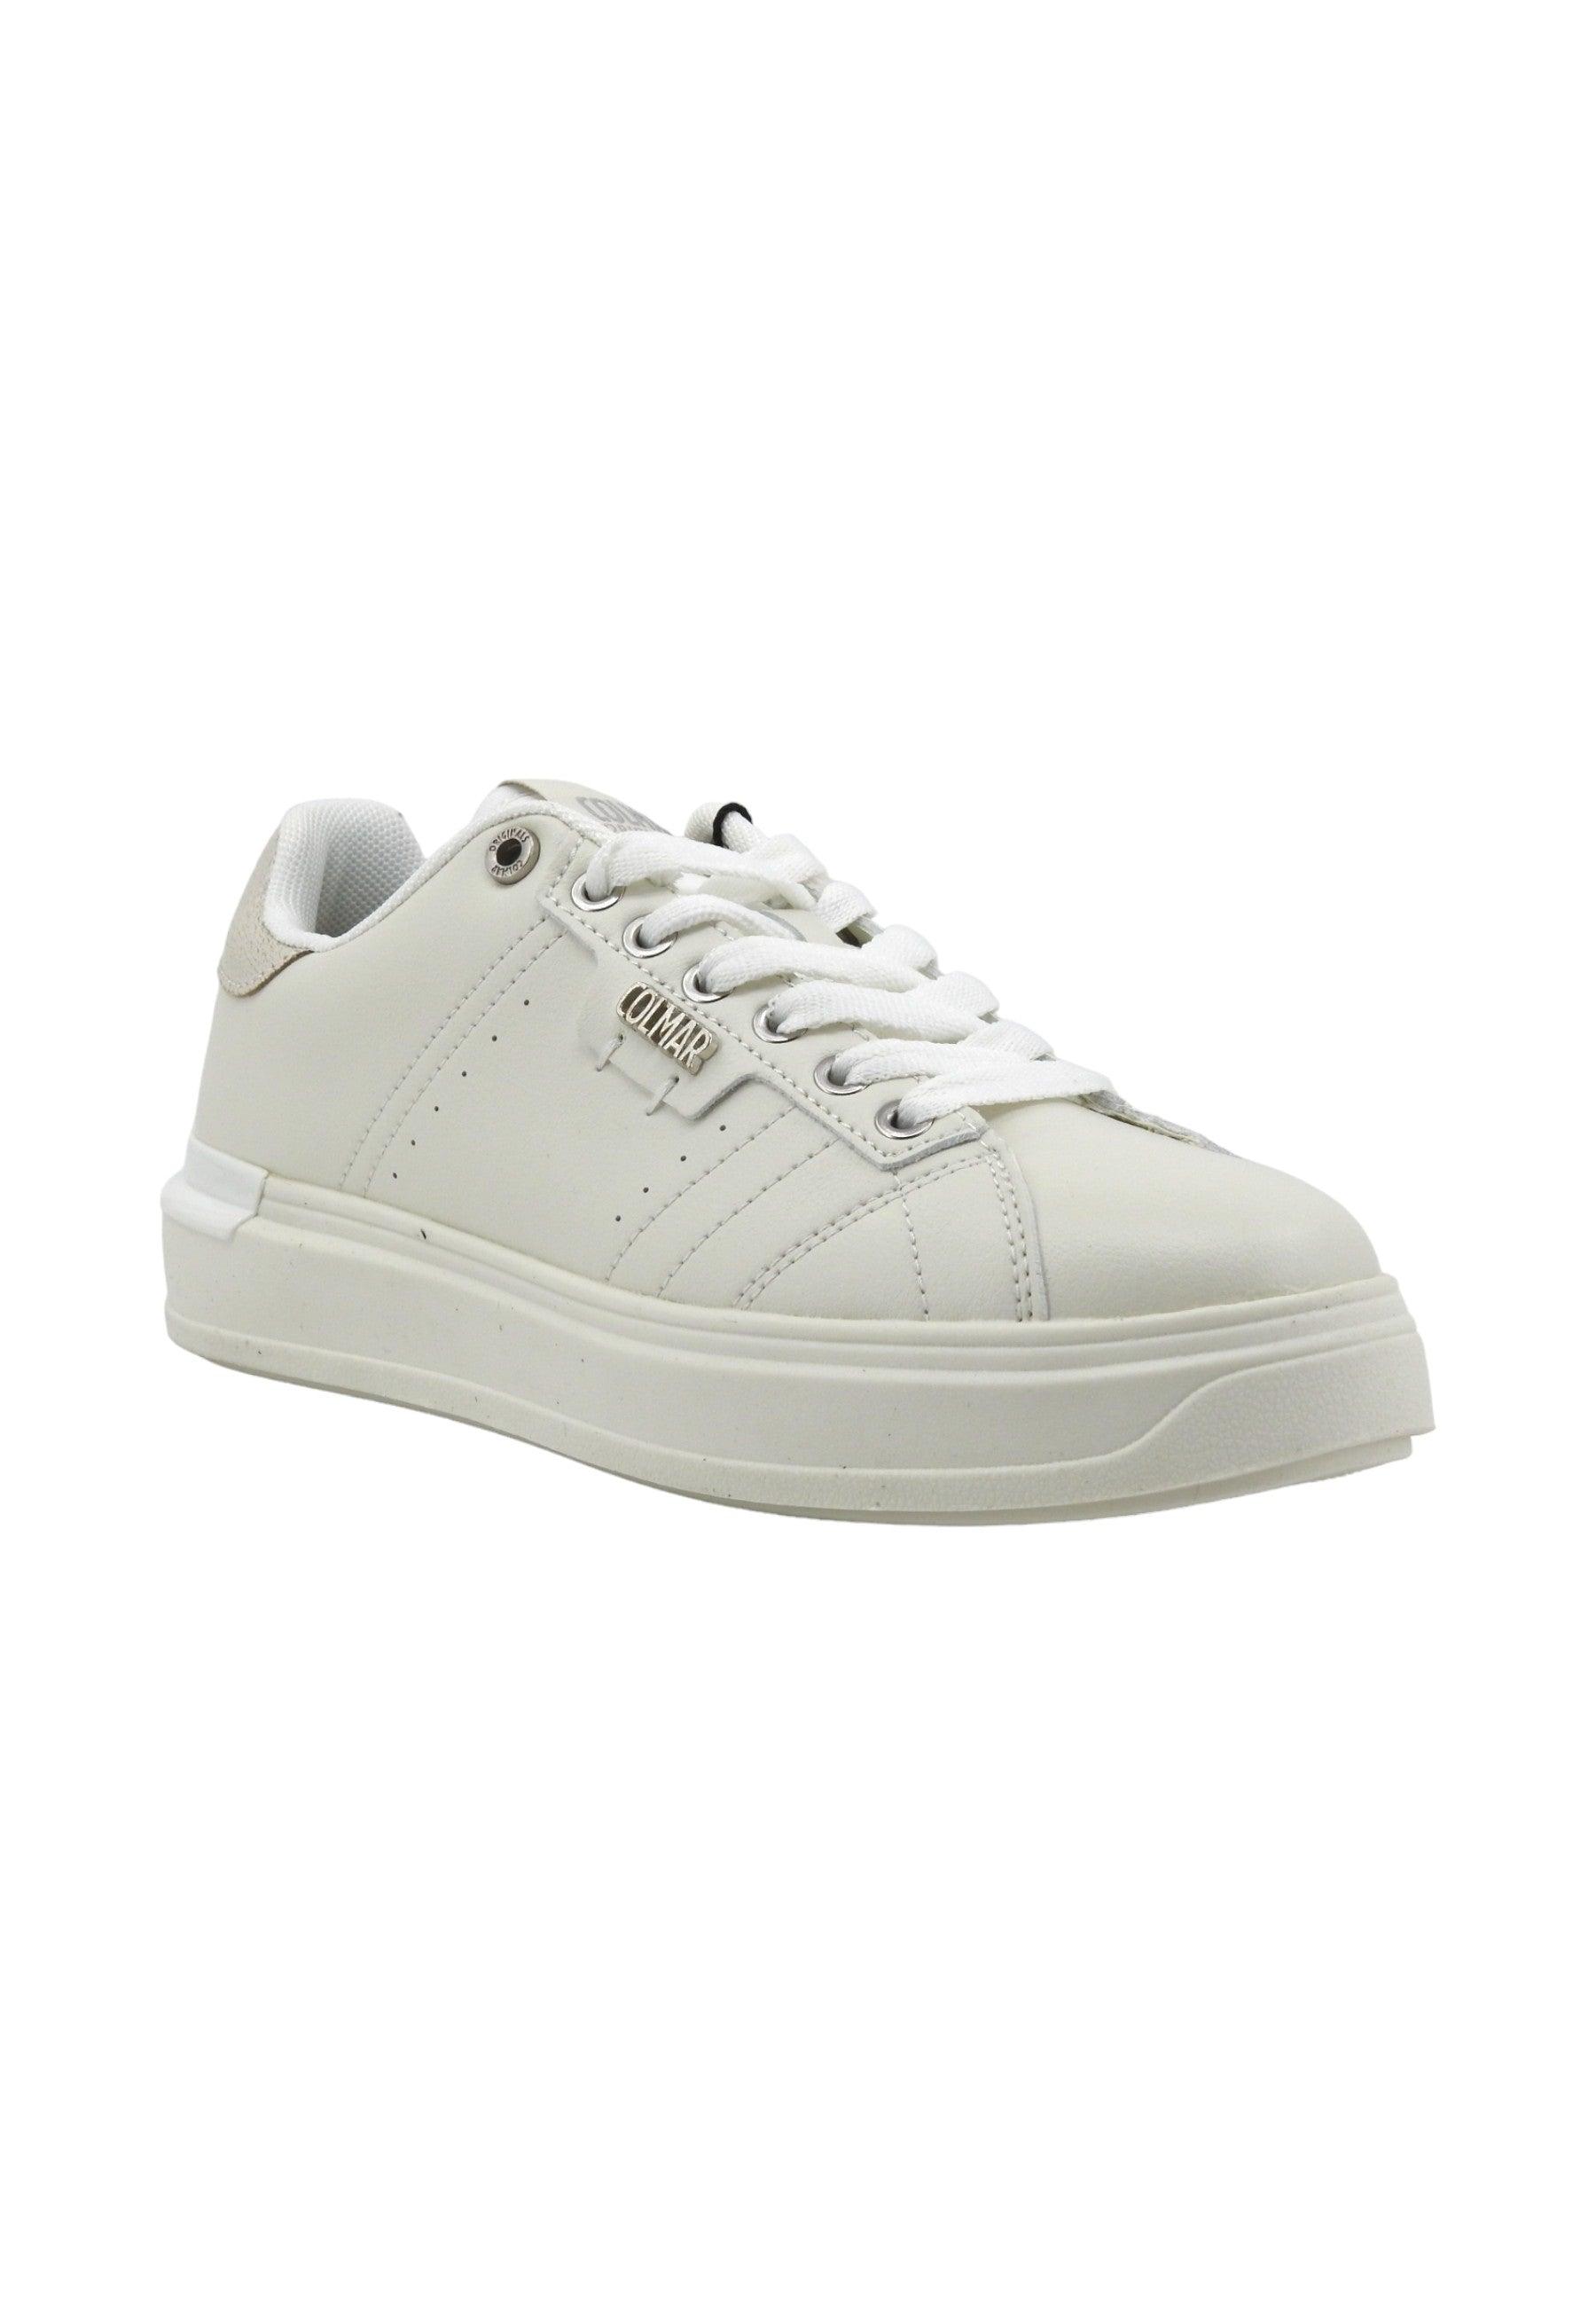 COLMAR Sneaker Donna White CLAYTON BLEACH - Sandrini Calzature e Abbigliamento